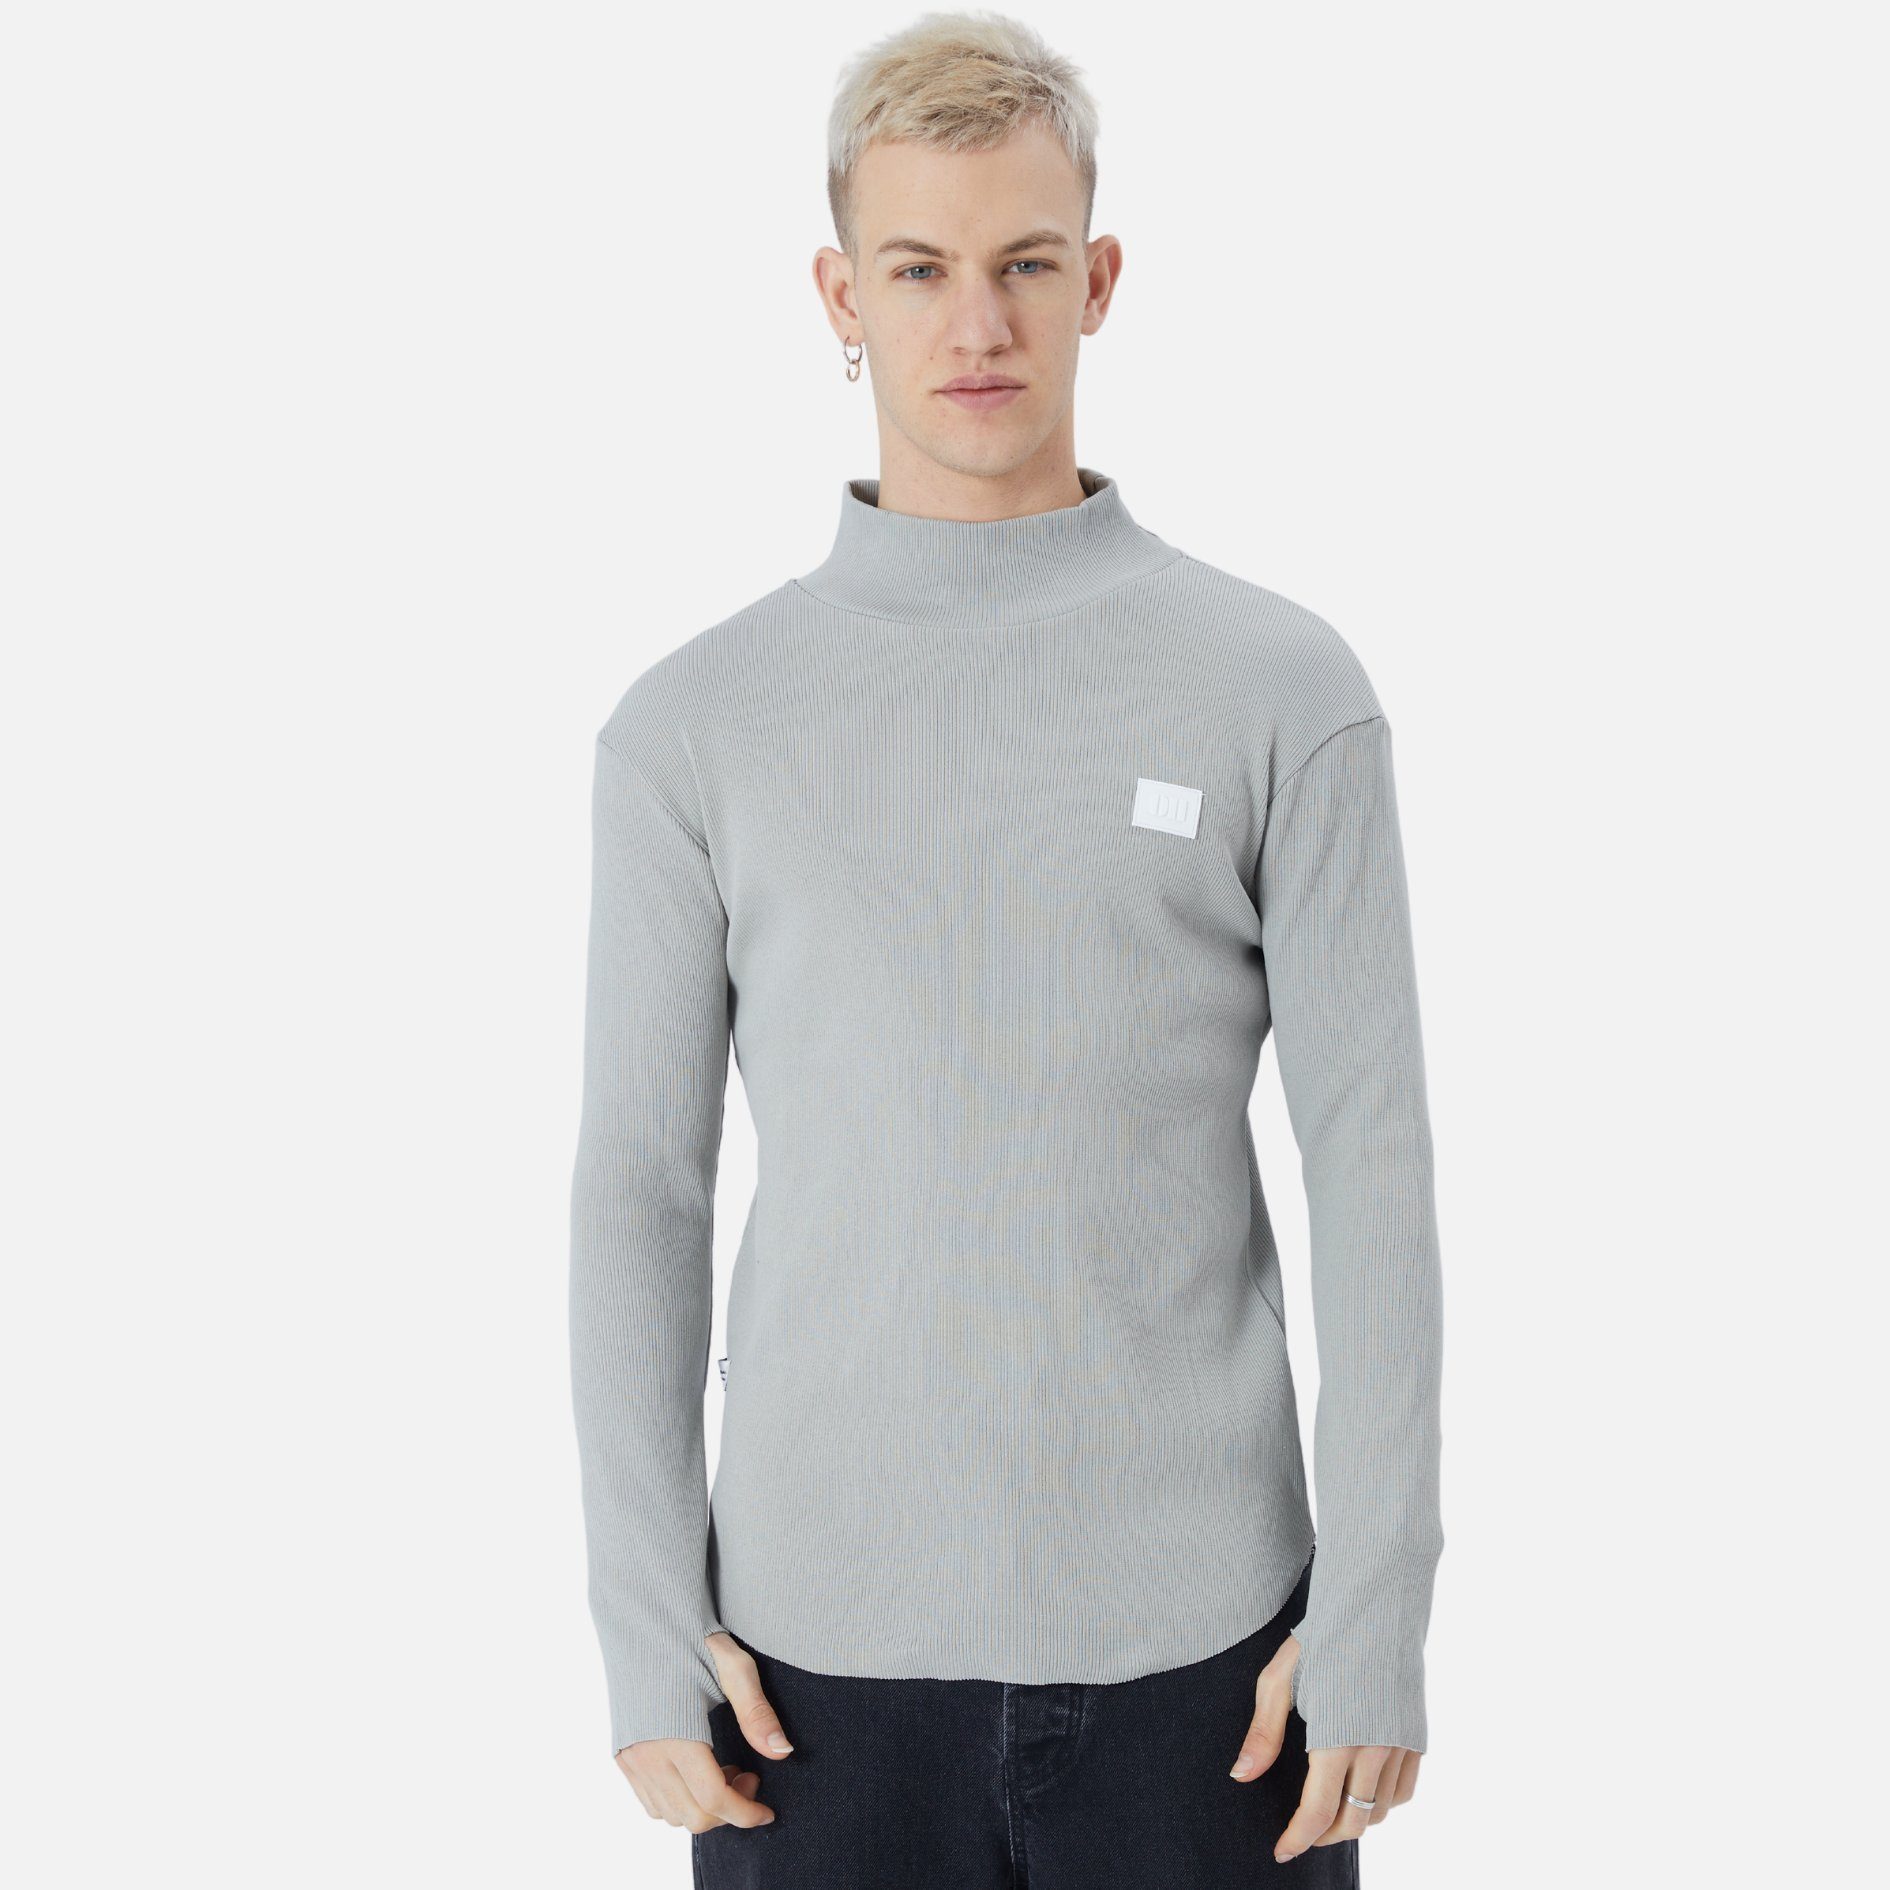 COFI Casuals Sweatshirt Herren Rundhals Sweatshirt Regular Fit Pullover Grau